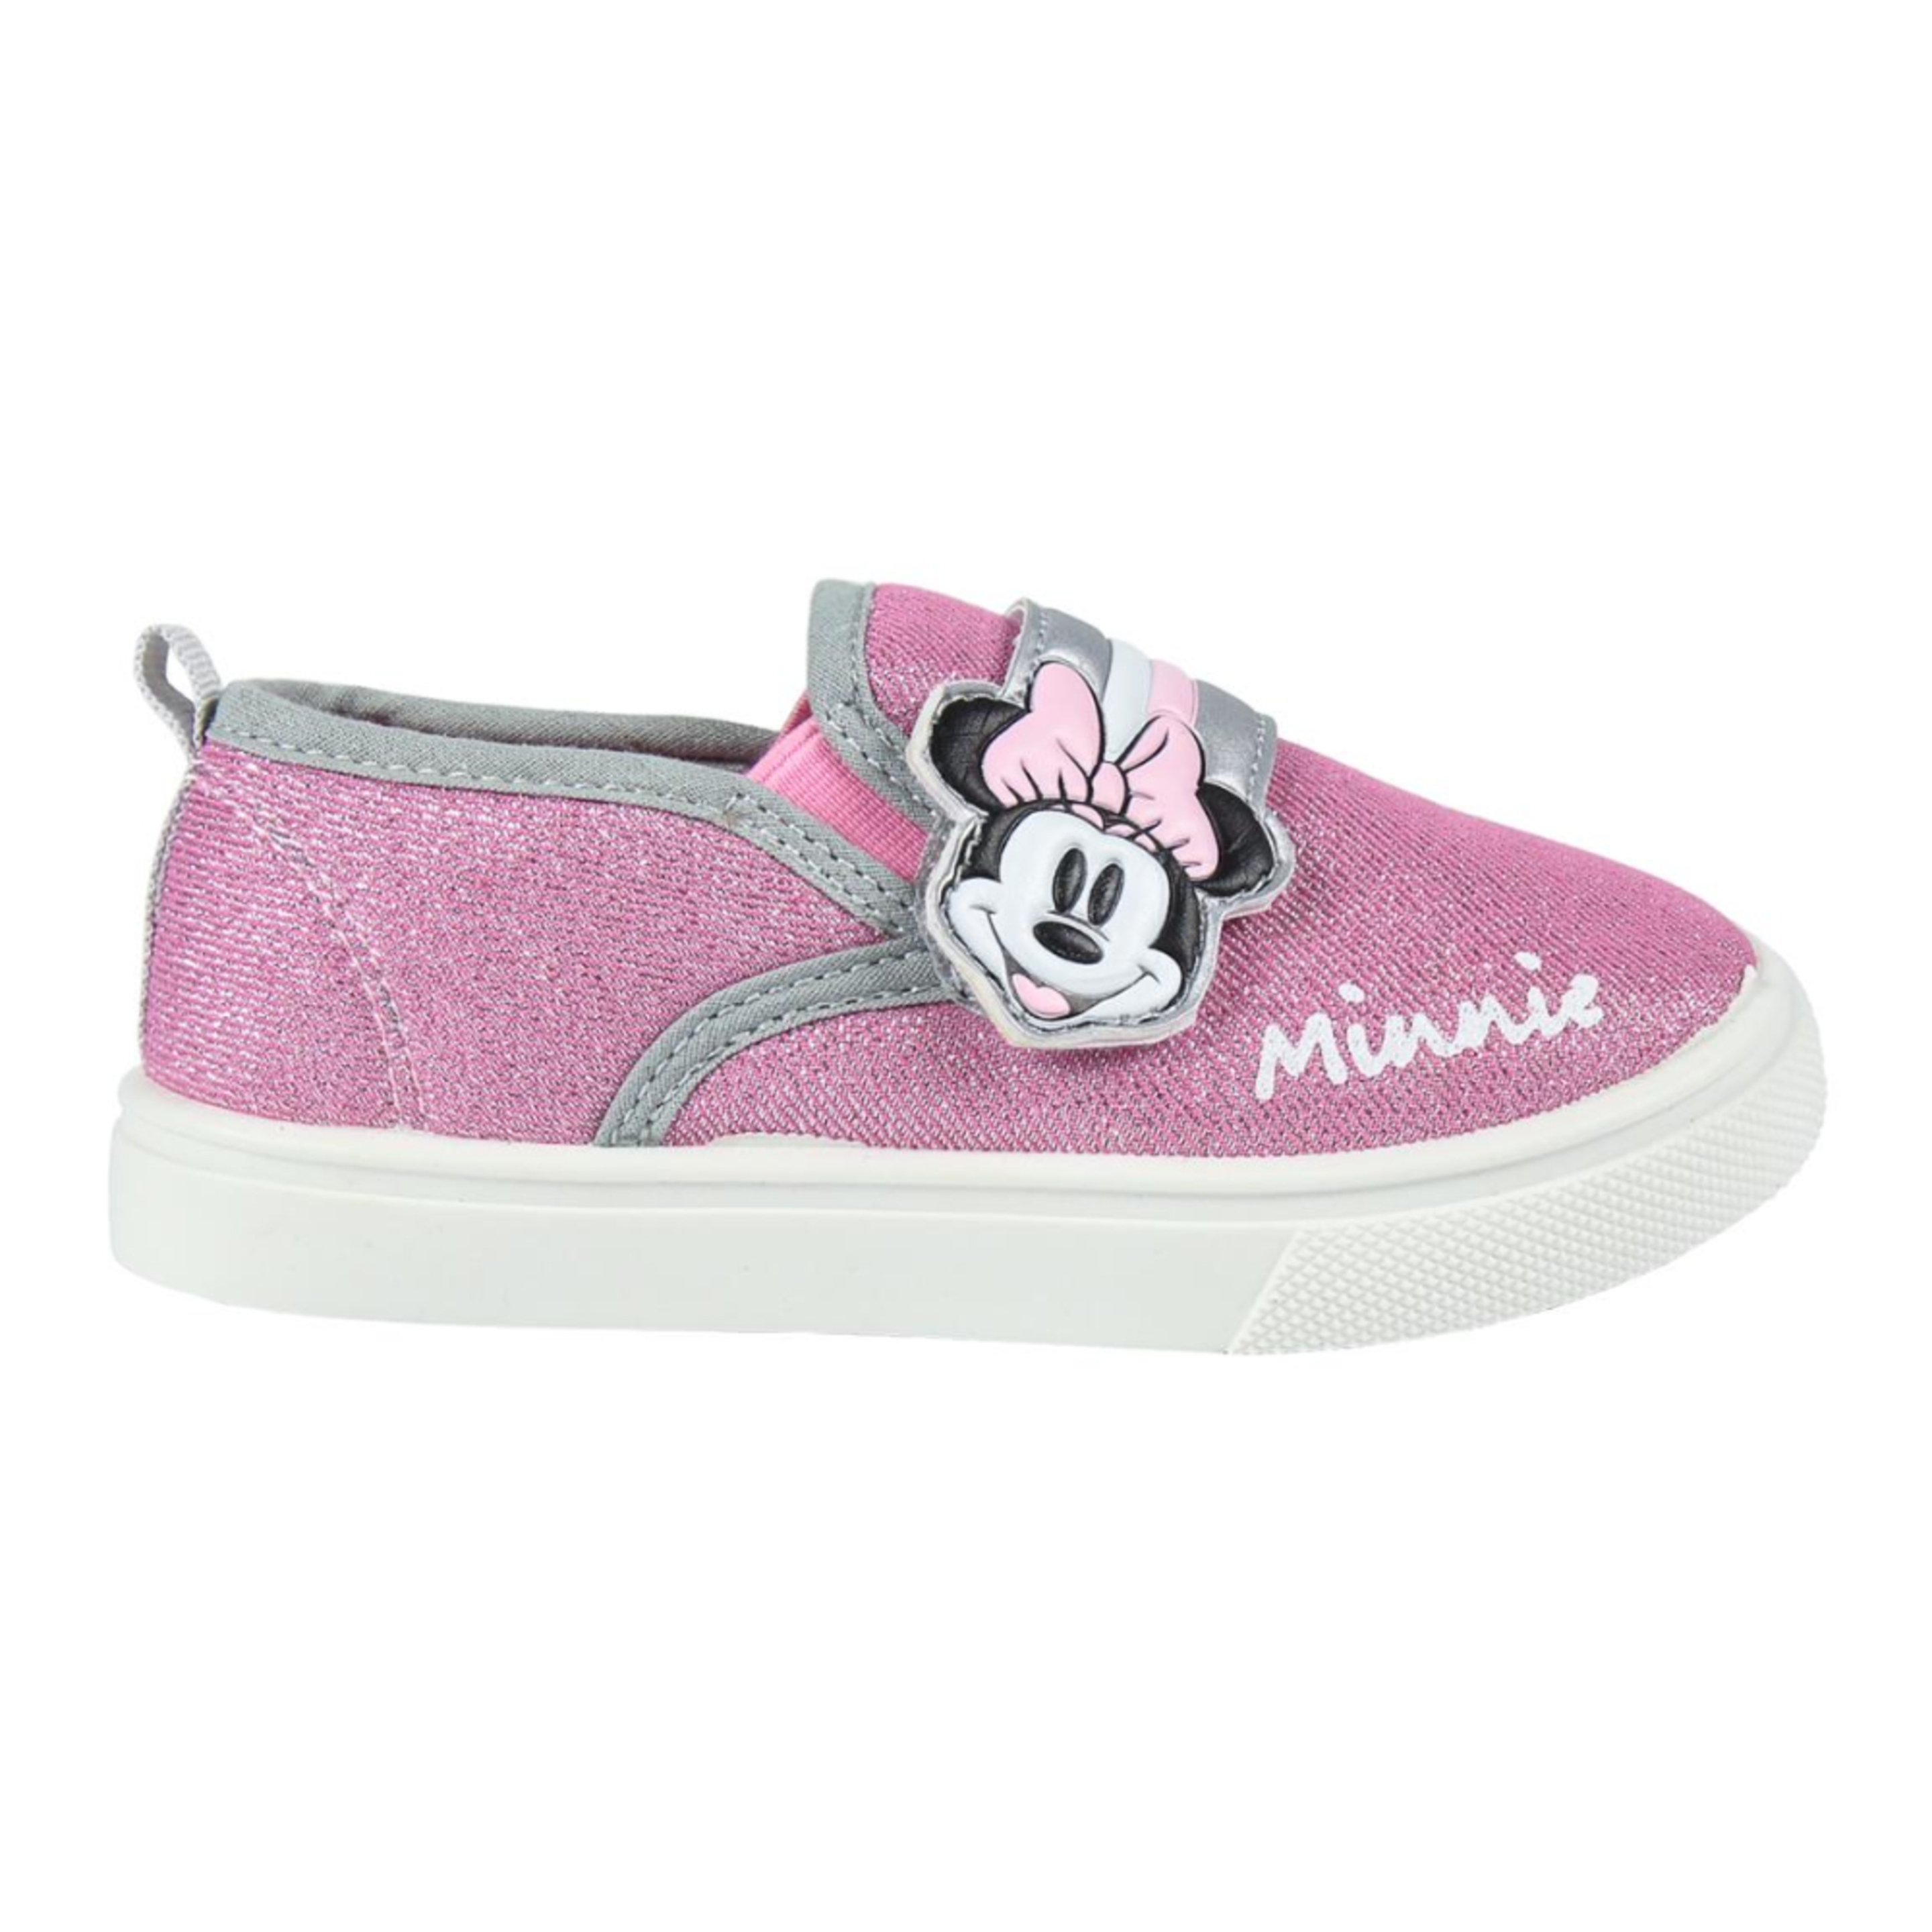 Zapatillas Minnie Mouse 64512 - rosa - 